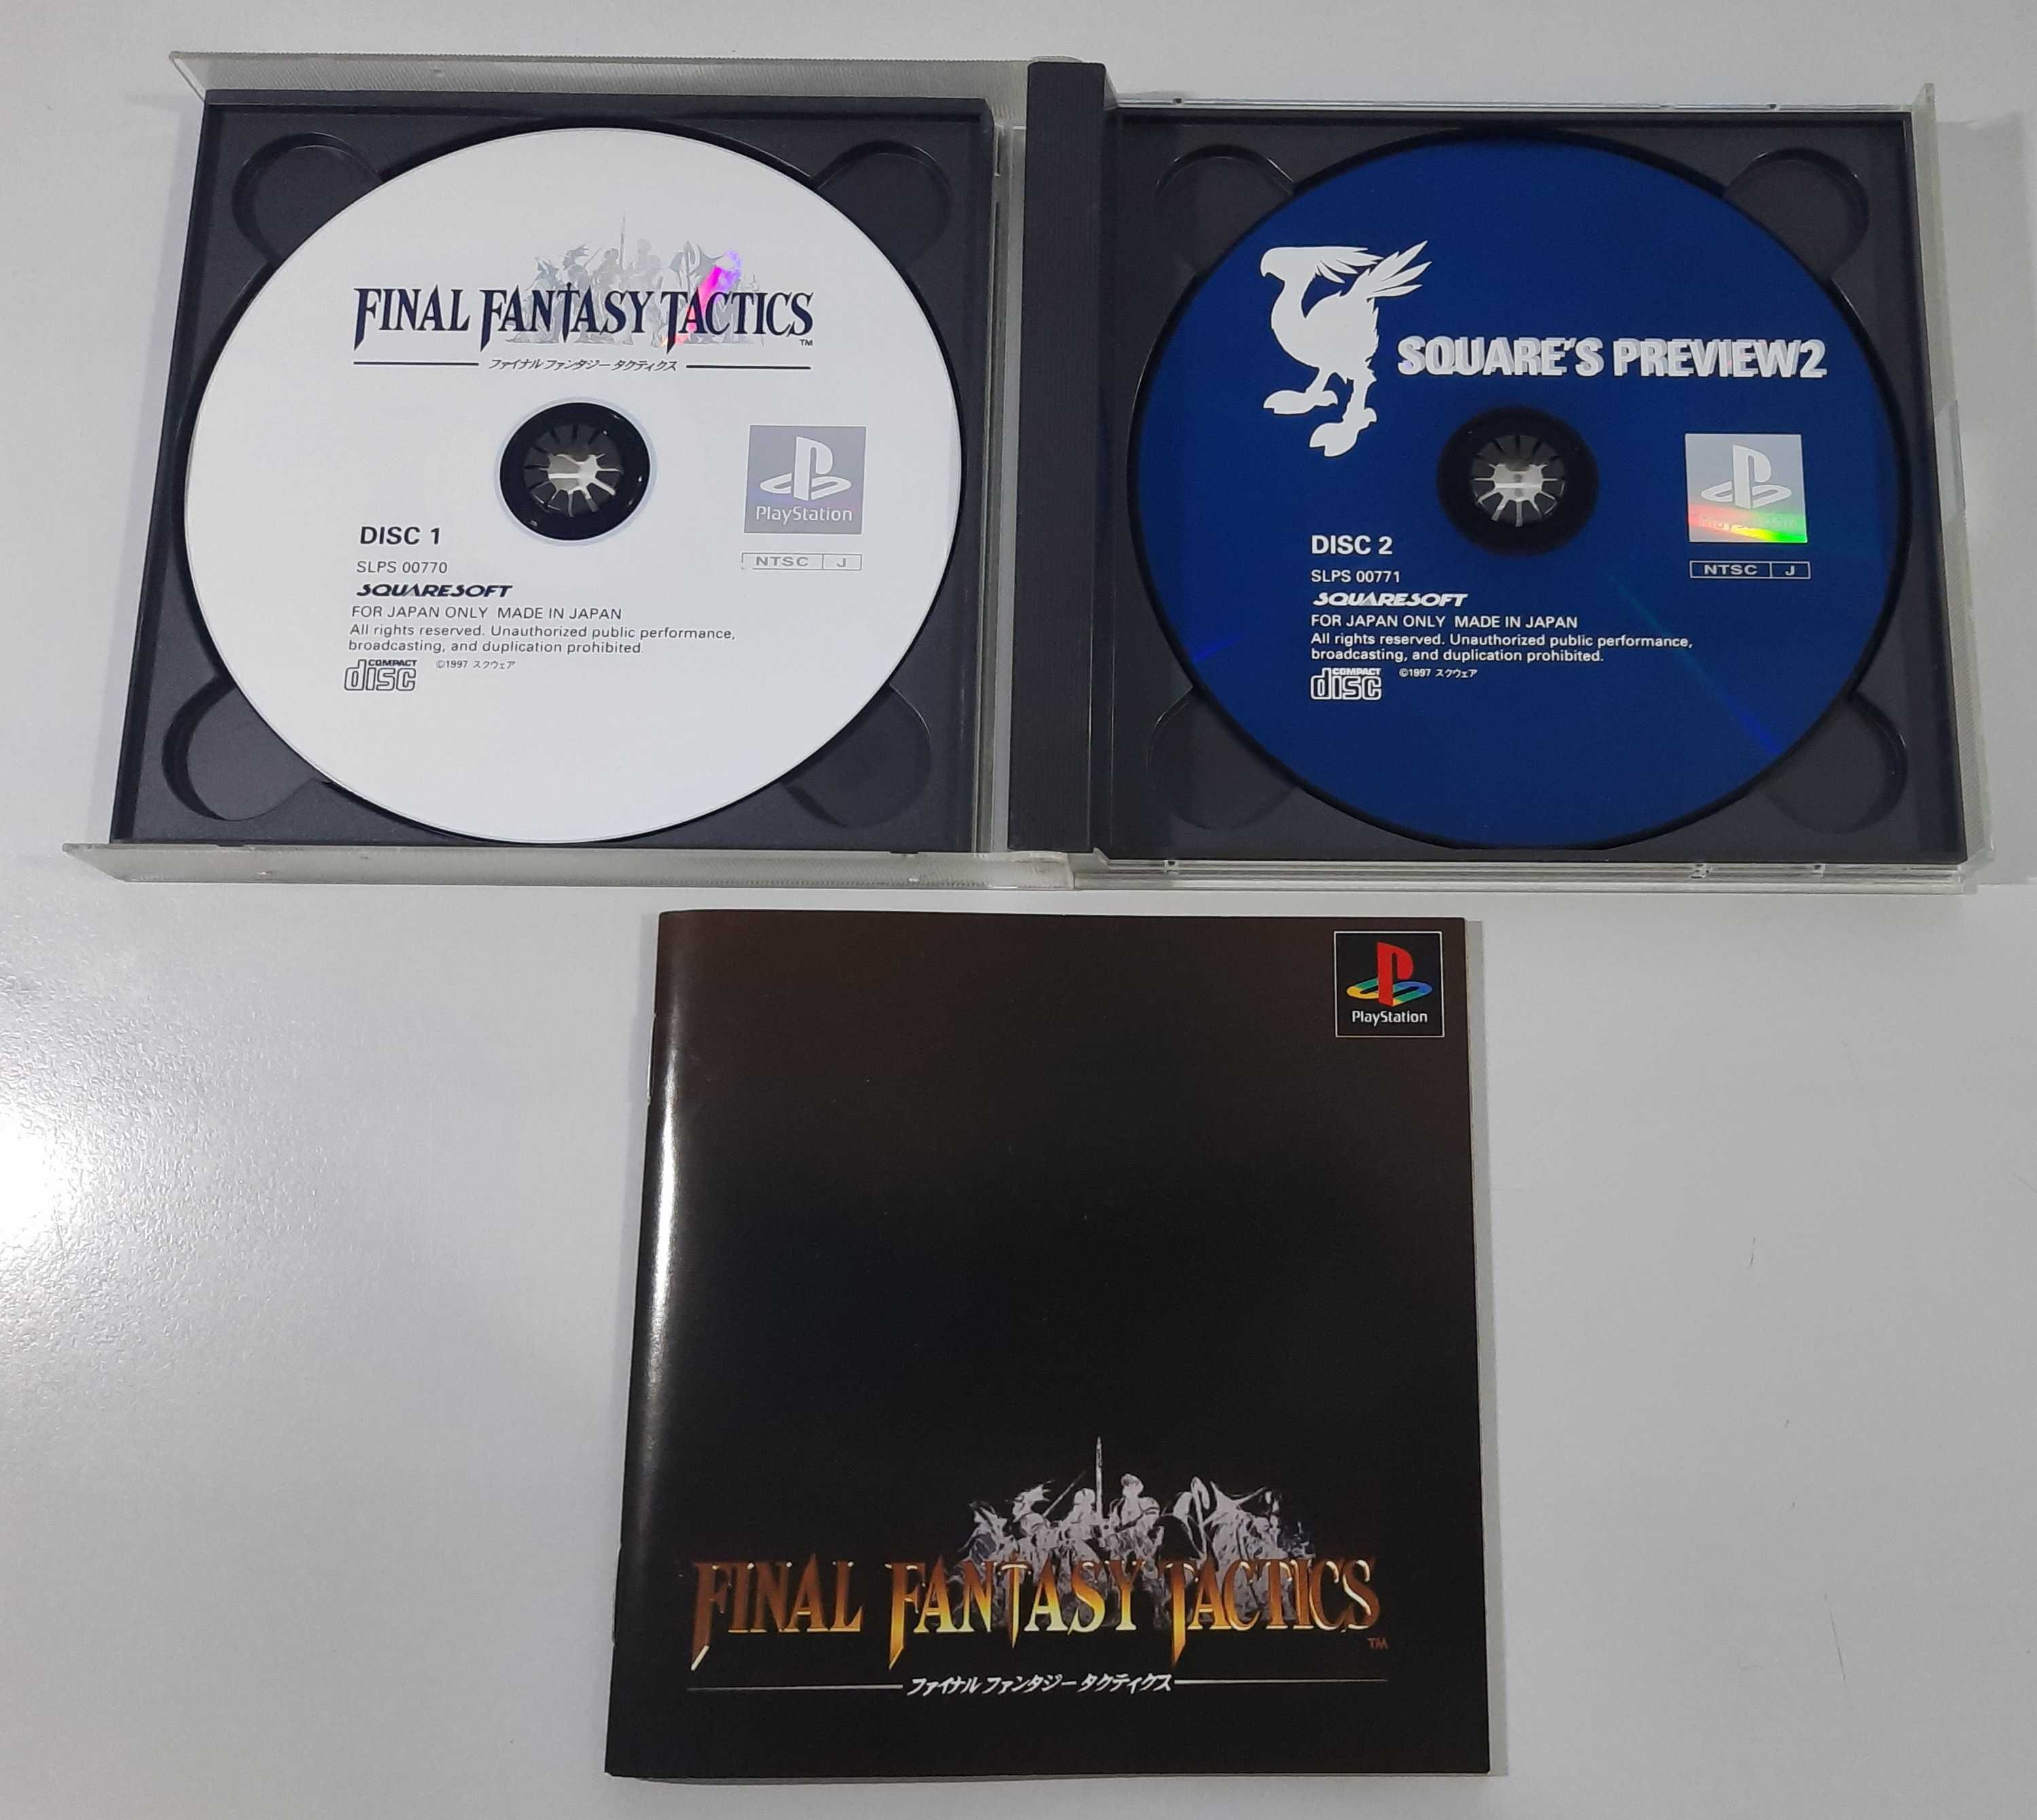 Final Fantasy Tactics / PS1 [NTSC-J]